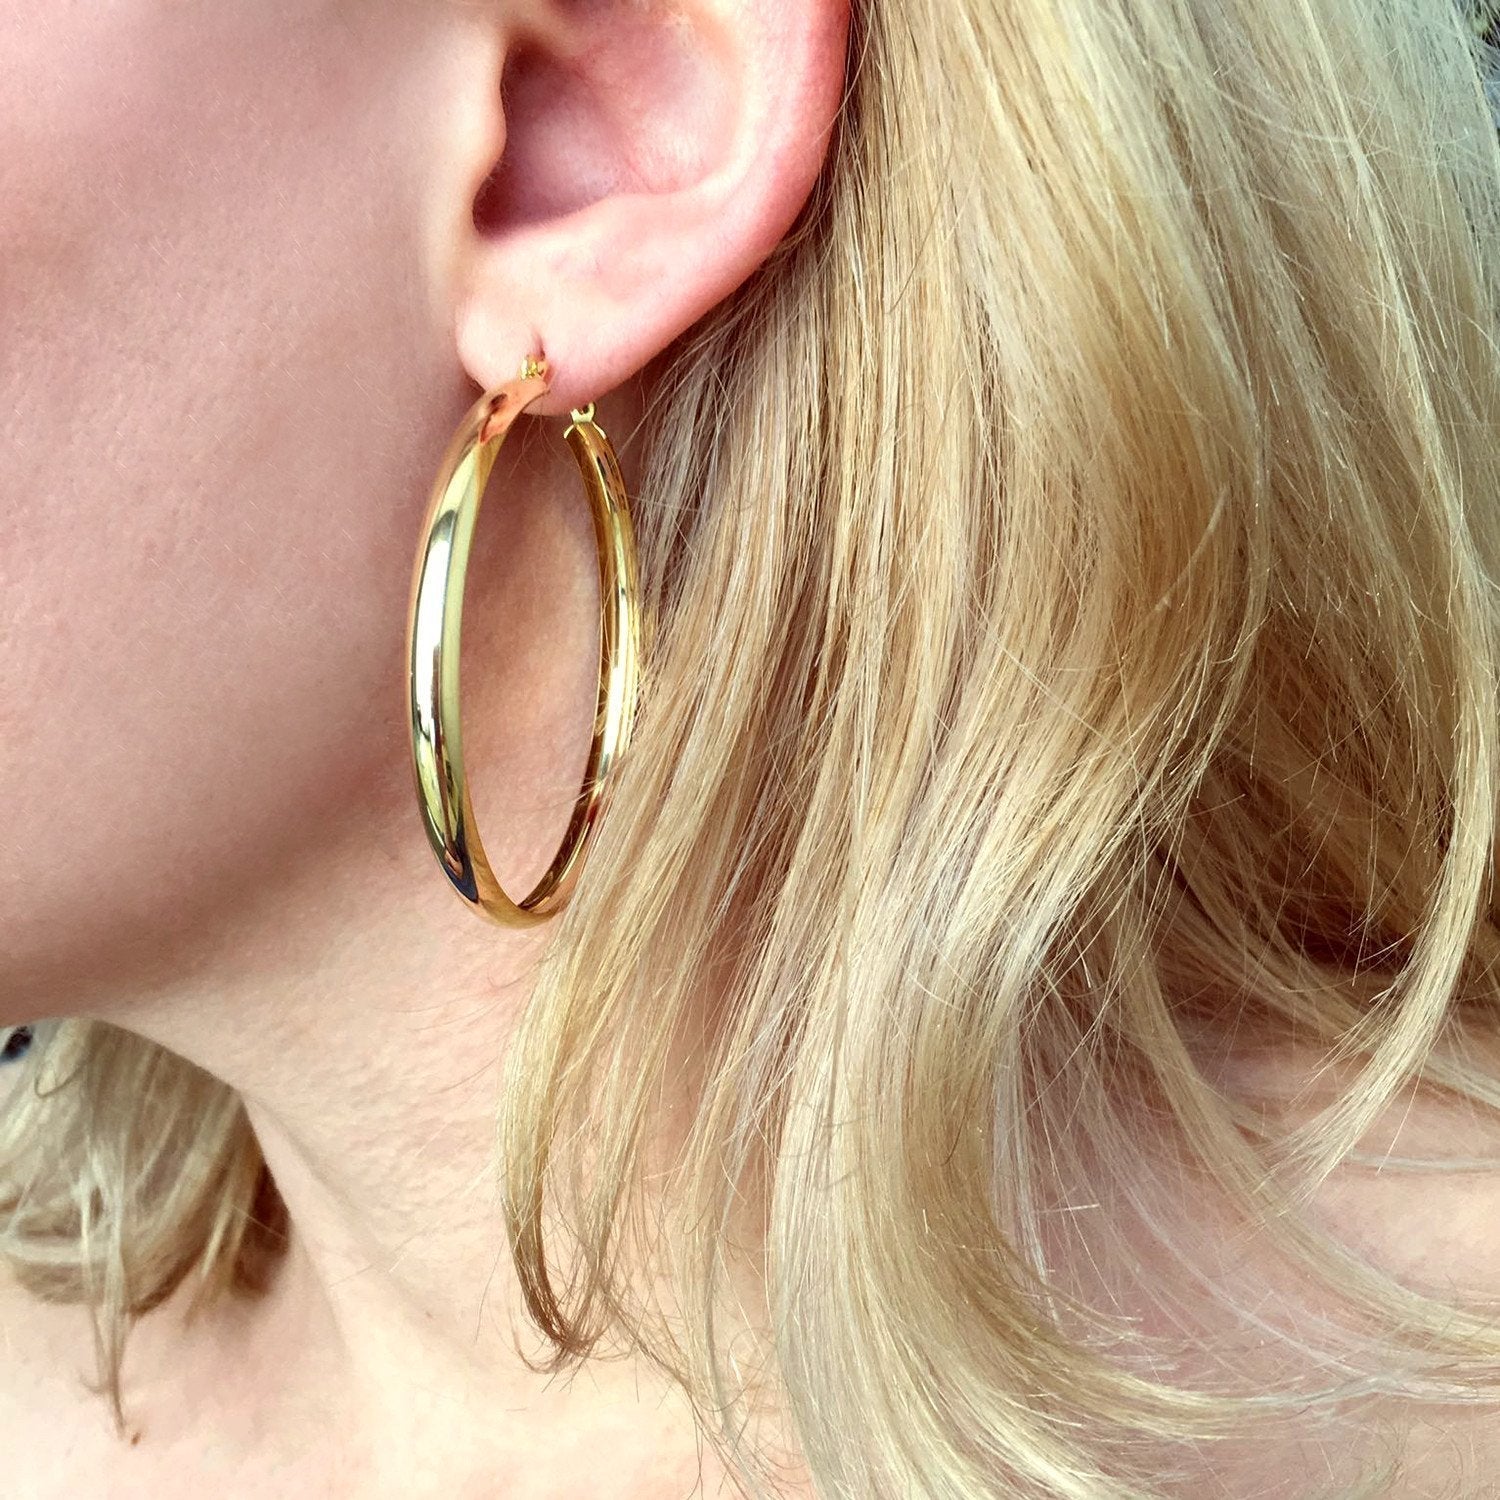 Light 18k Gold Filled Hoop Earrings 50mm Diameter